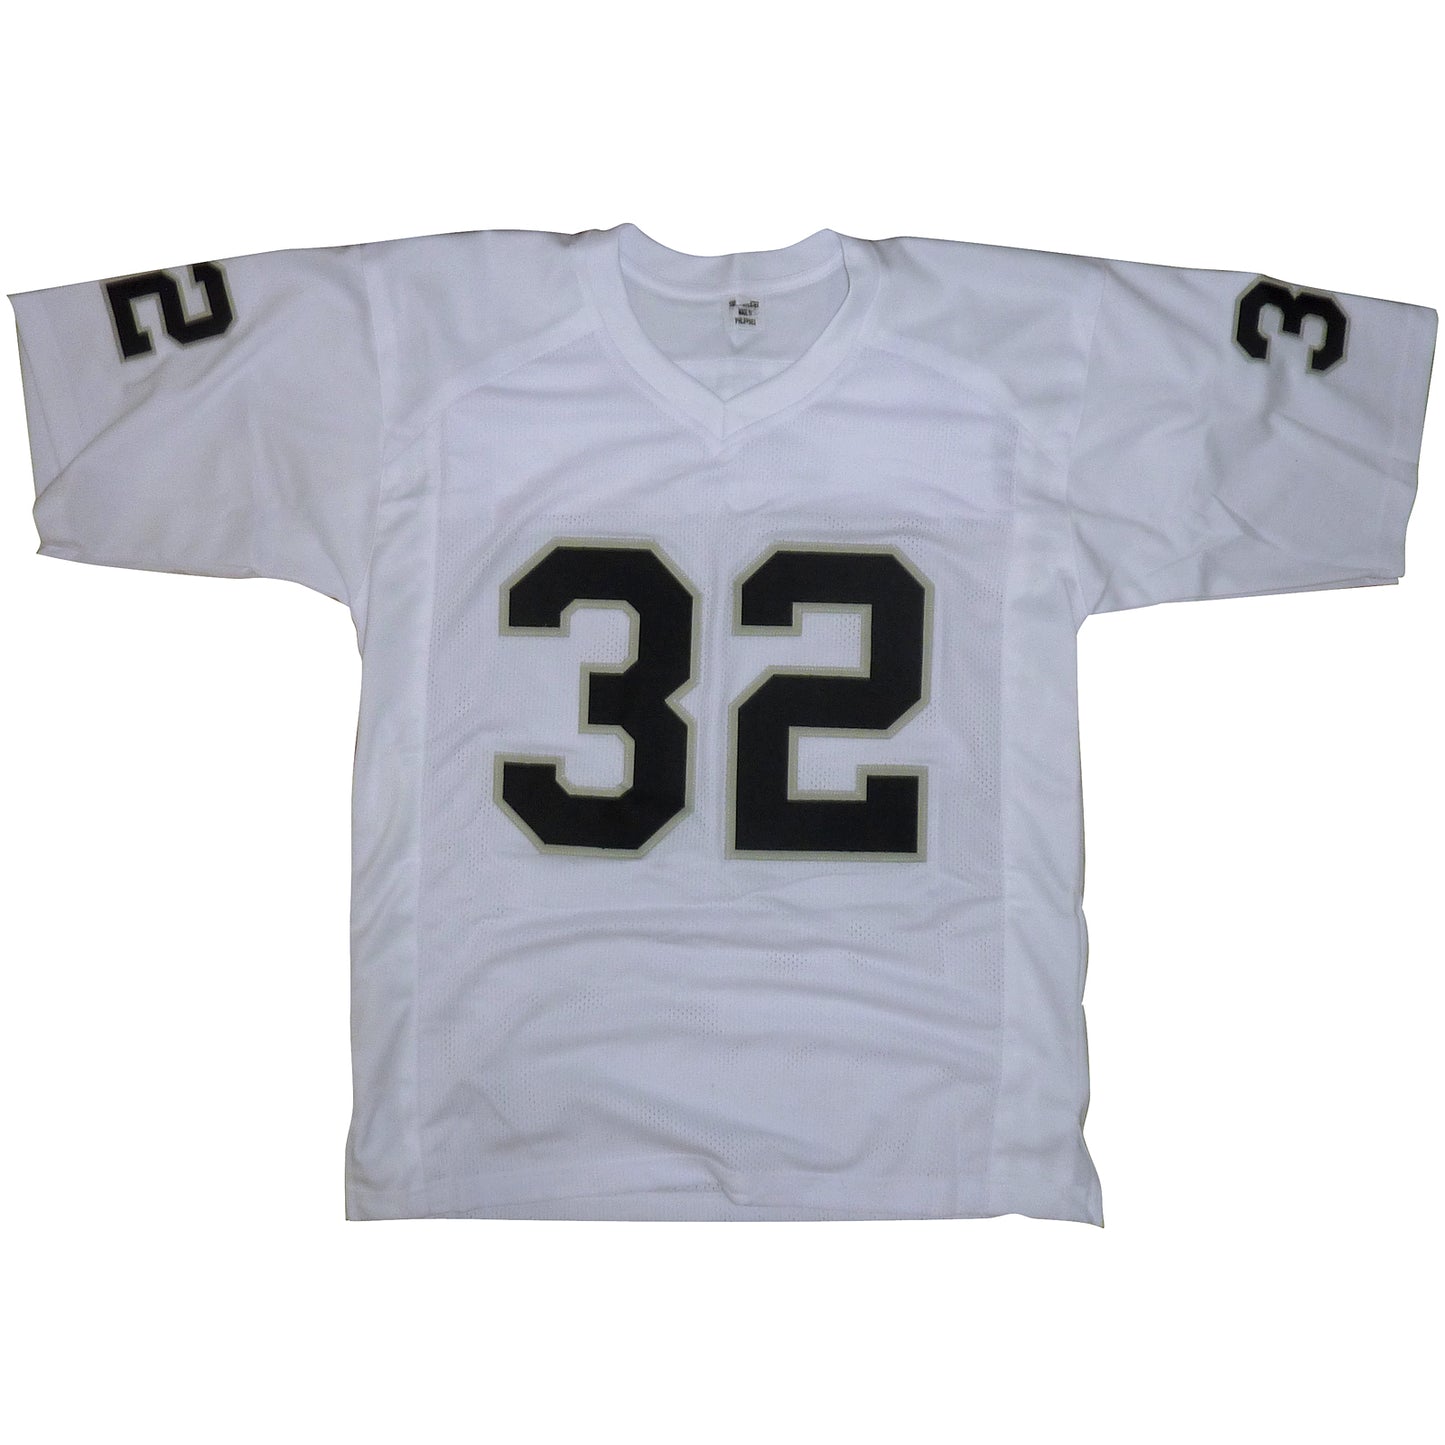 Jack Tatum Autographed Oakland Raiders (White #32) Jersey - JSA